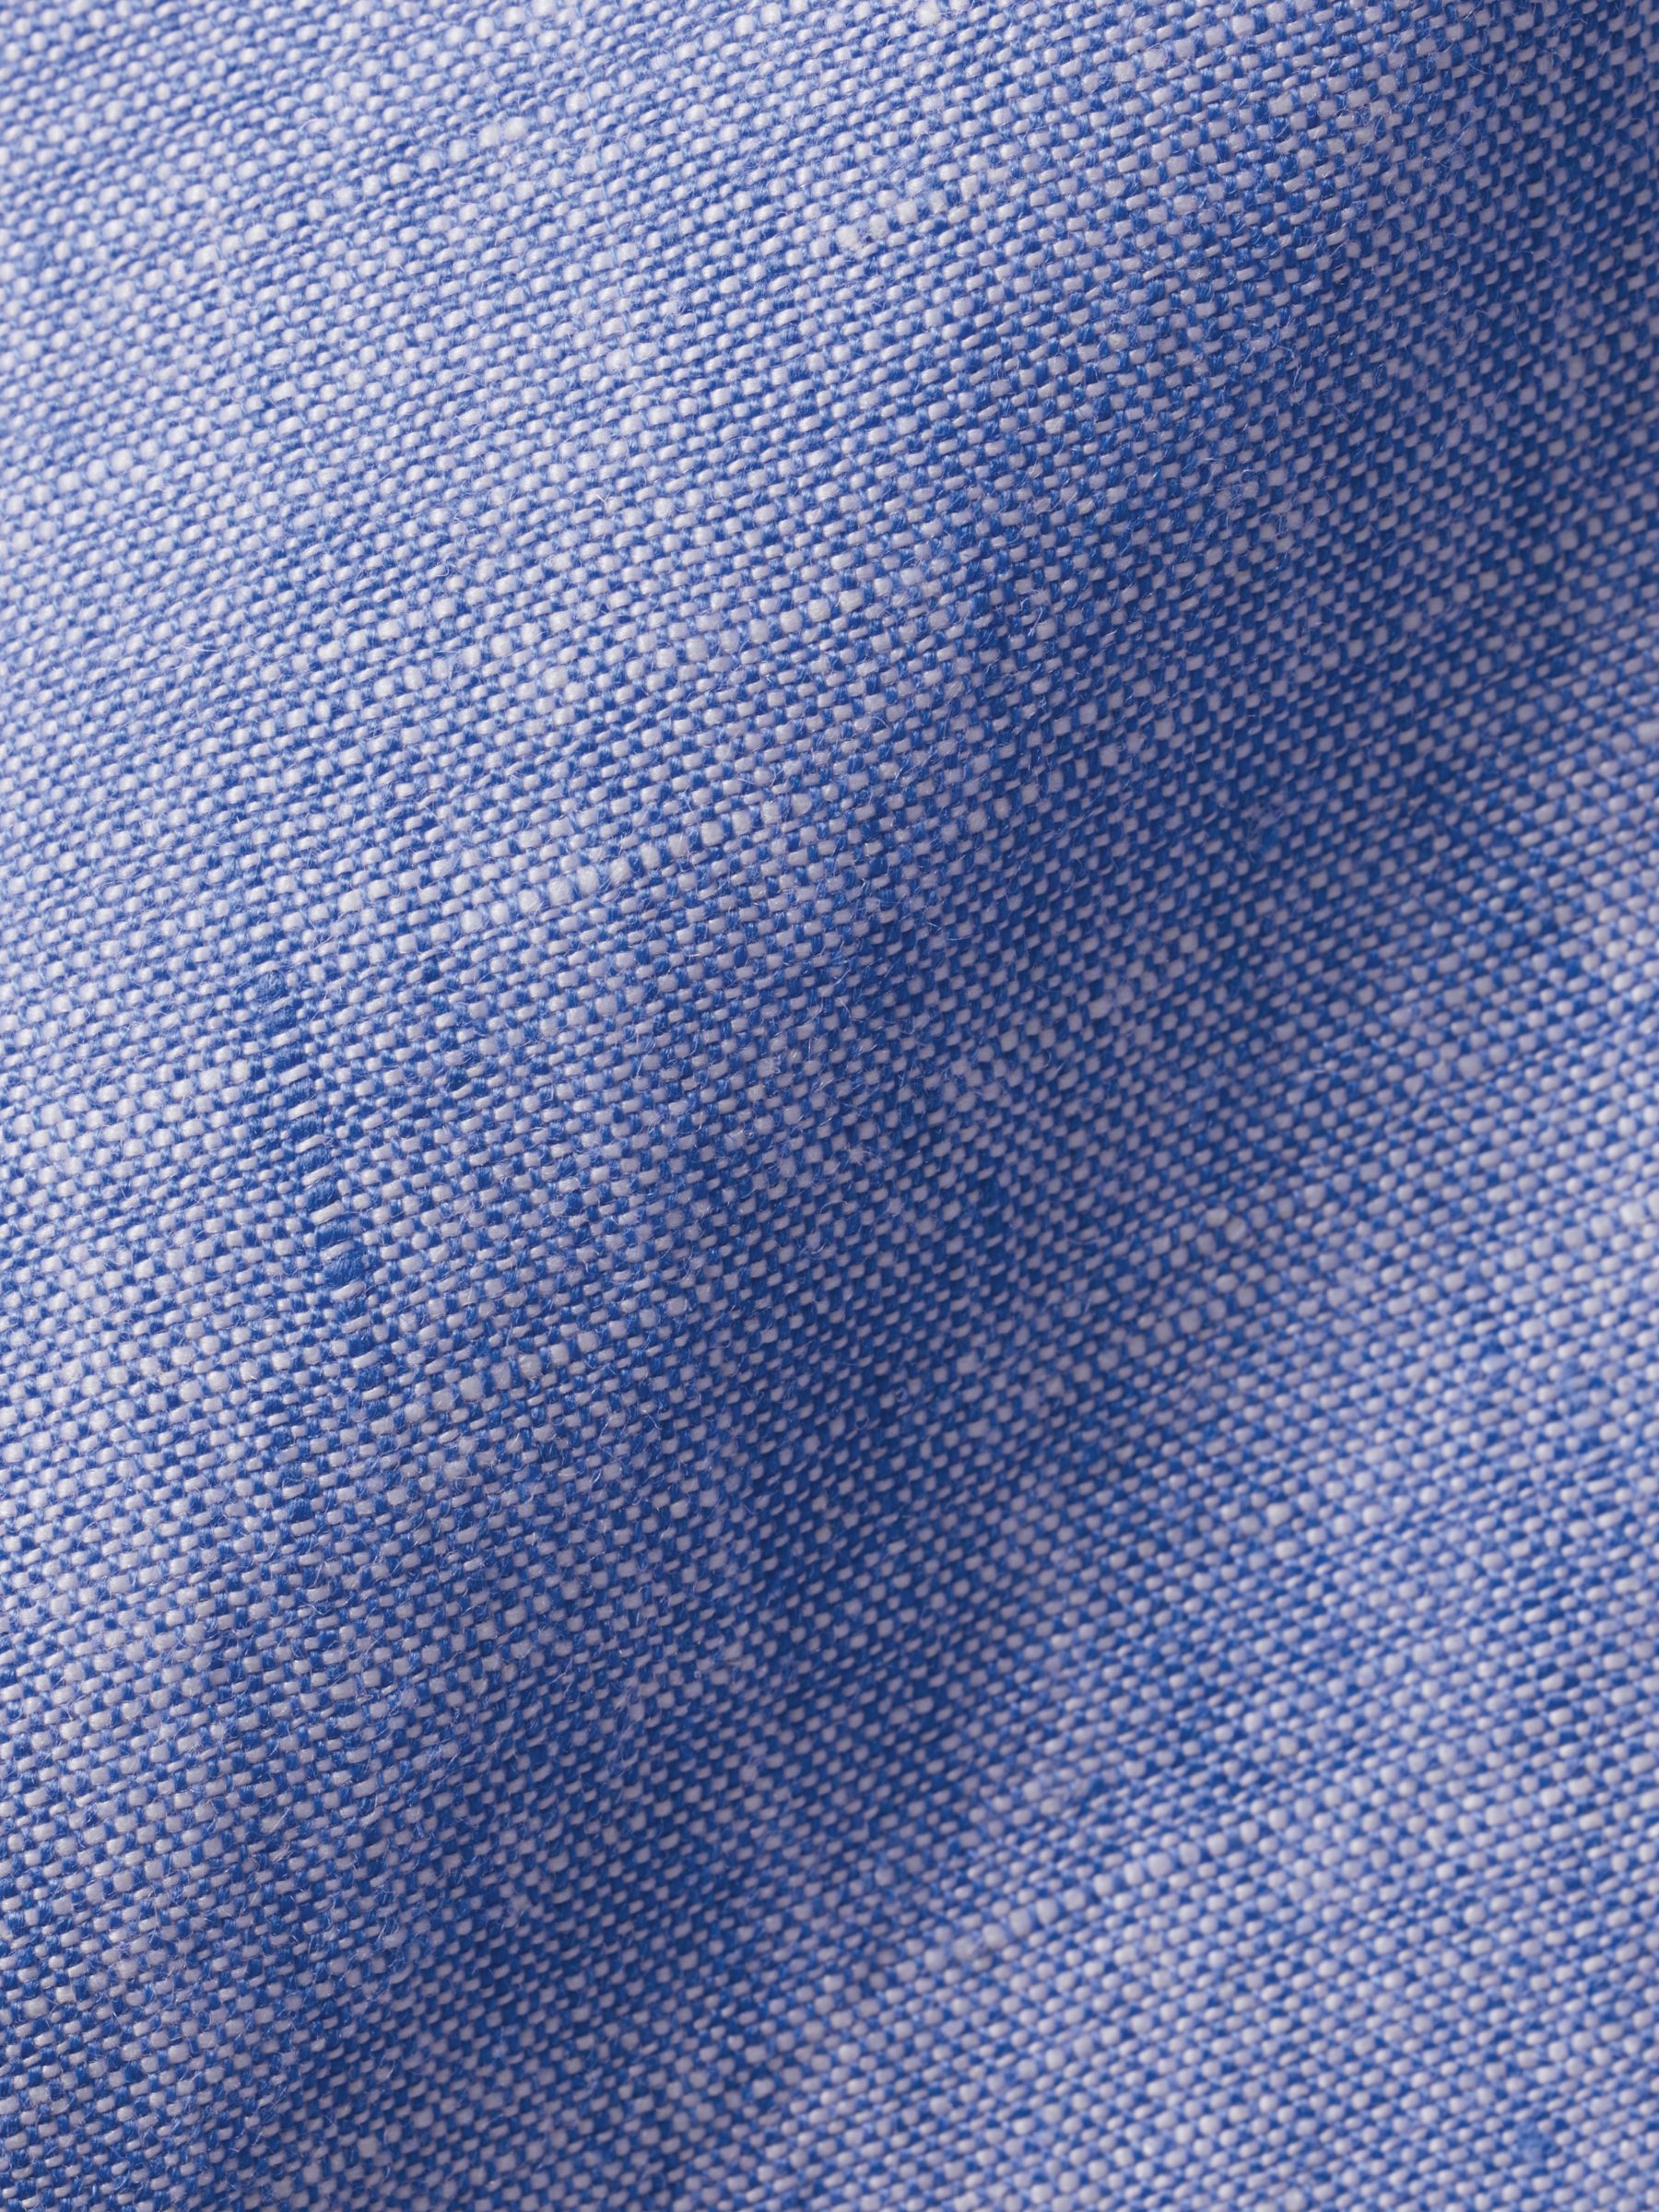 Buy Charles Tyrwhitt Linen Slim Fit Shirt Online at johnlewis.com